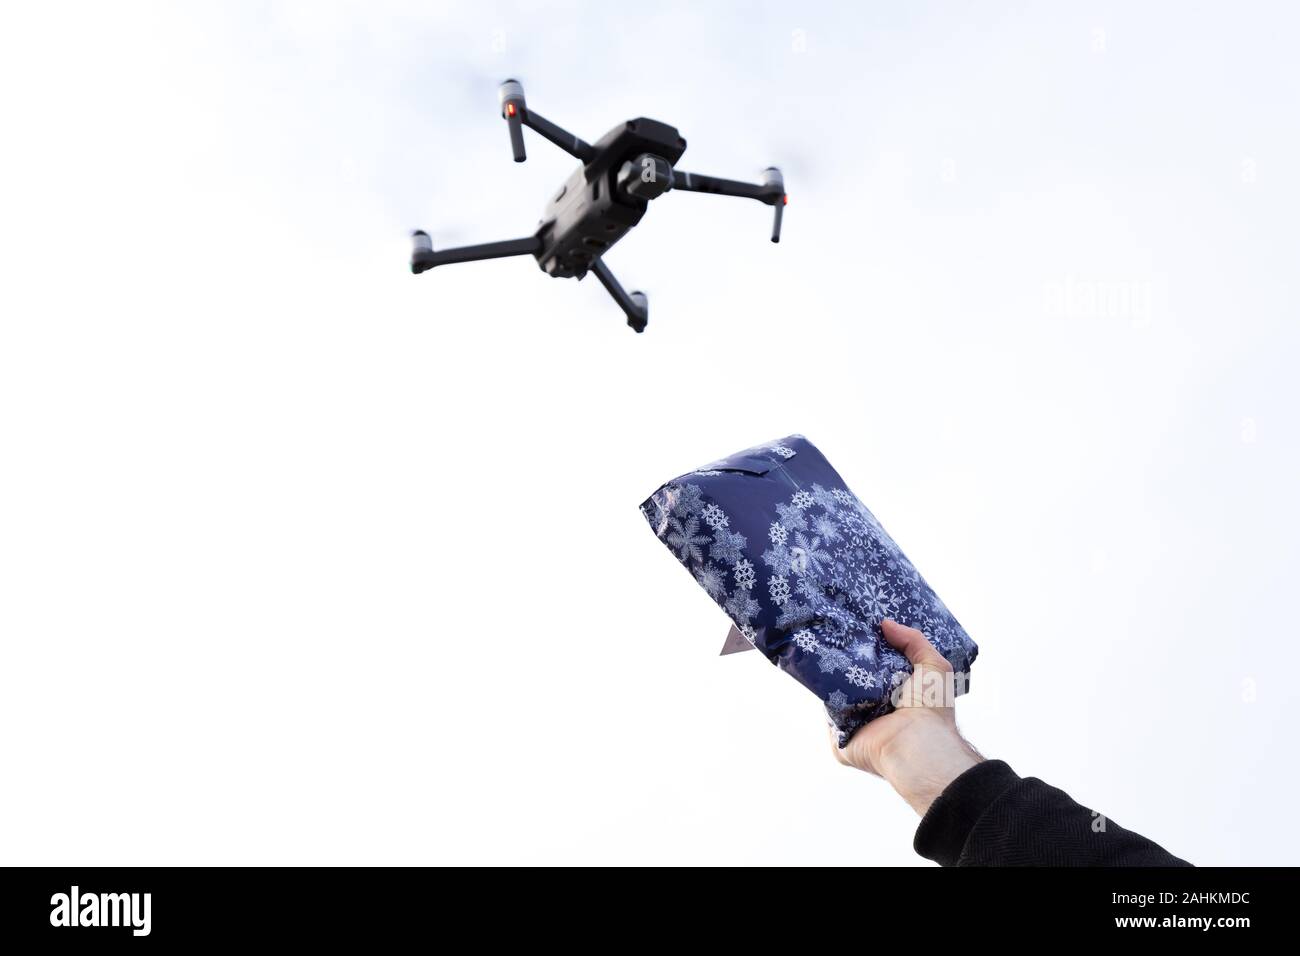 Un drone autonome de livraison de courrier avec une main tenant un paquet au ciel. Banque D'Images